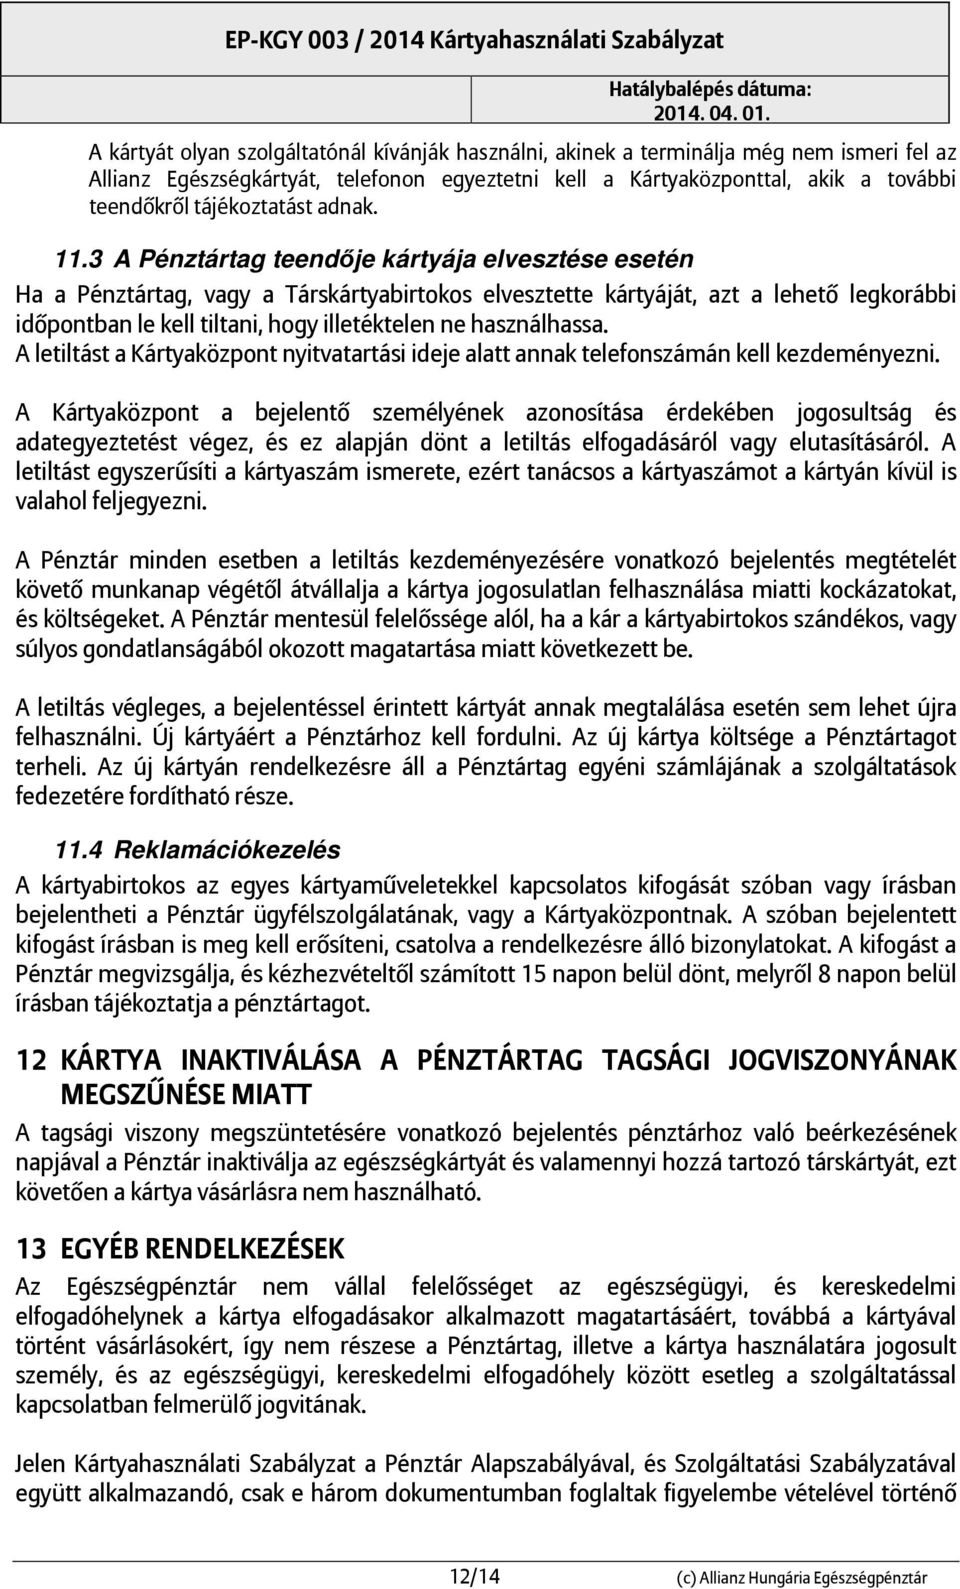 Allianz Hungária Egészségpénztár Kártyahasználati Szabályzat - PDF Ingyenes  letöltés